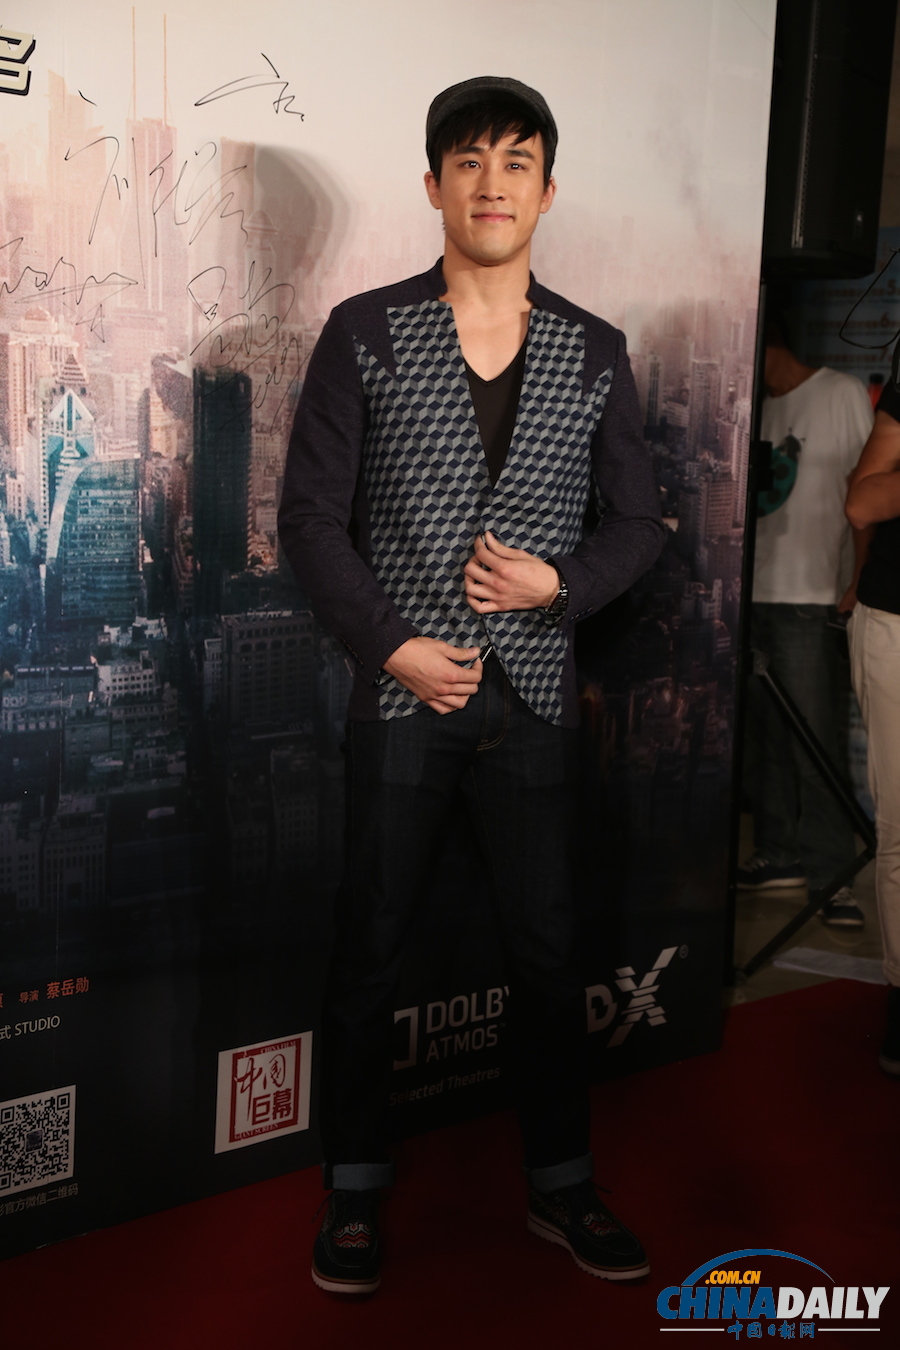 《痞子英雄2》首映红毯仪式在京举行 众主创期待影片大卖